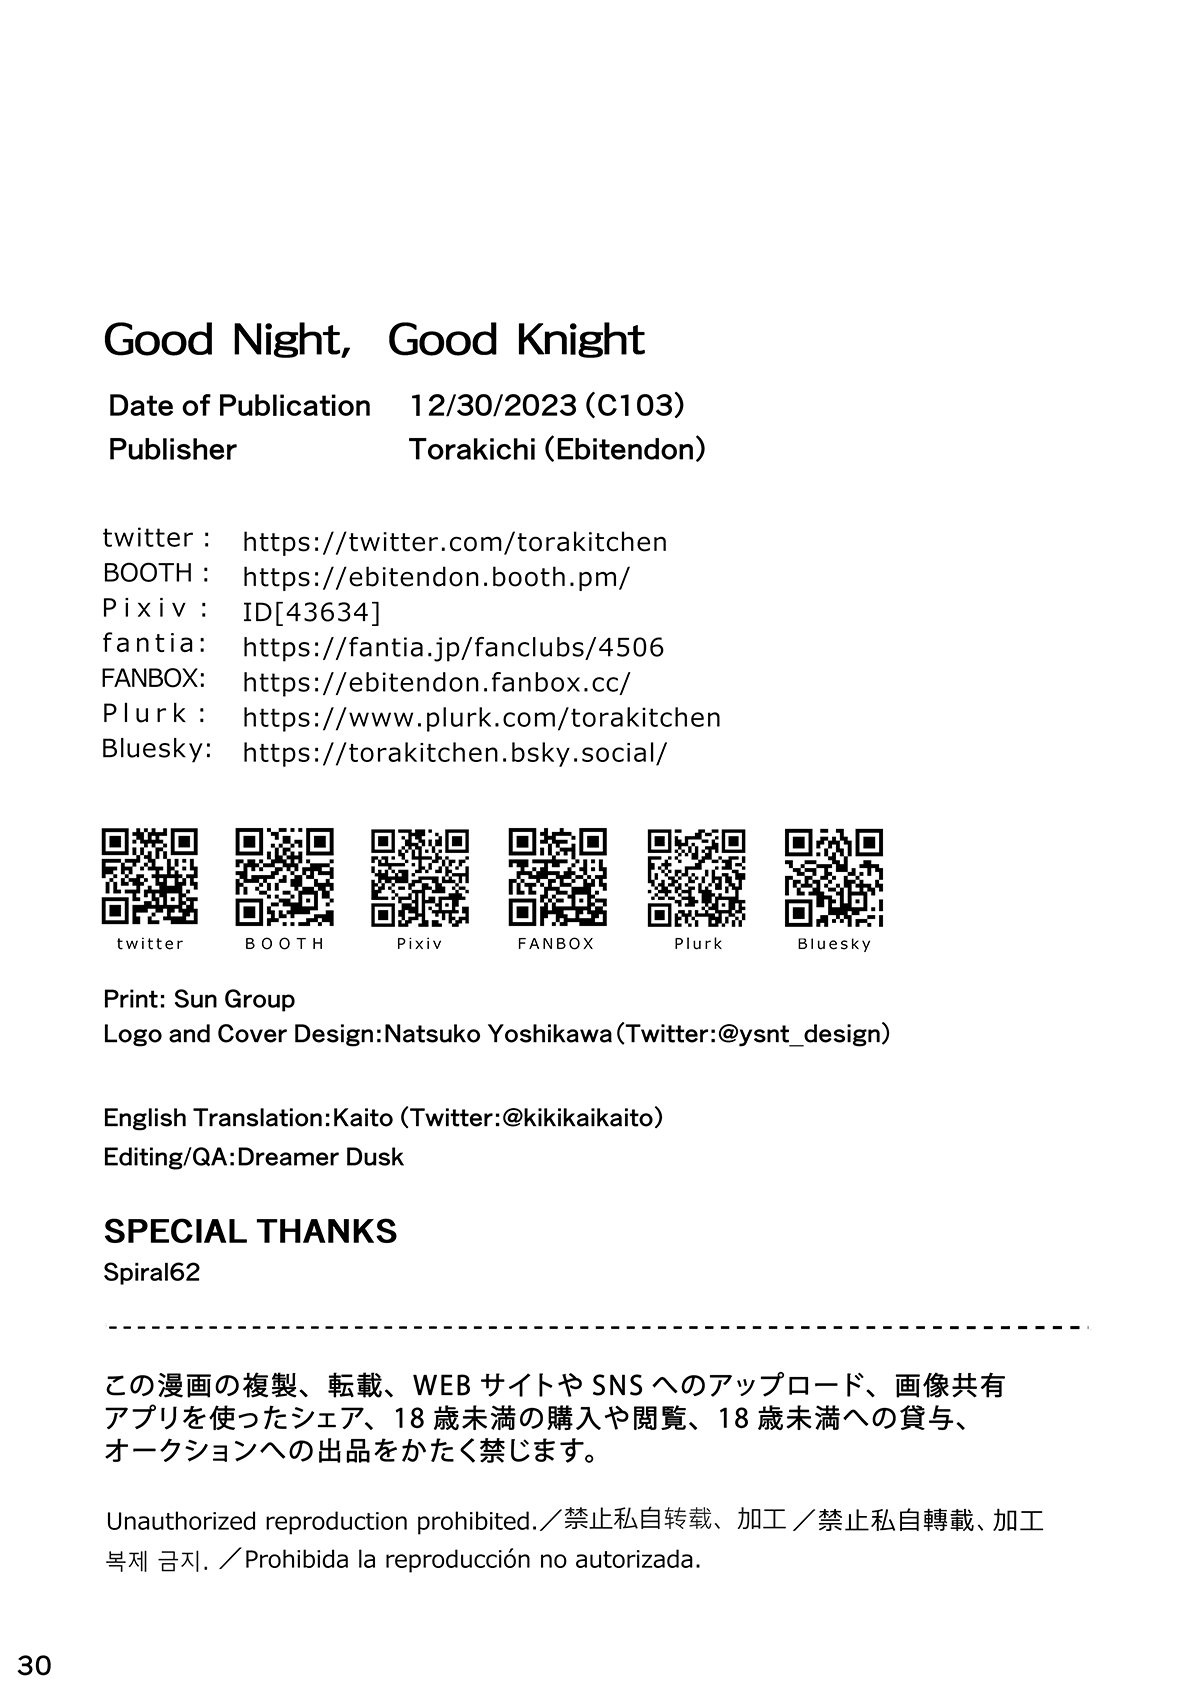 Good Night, Good Knight - Foto 29